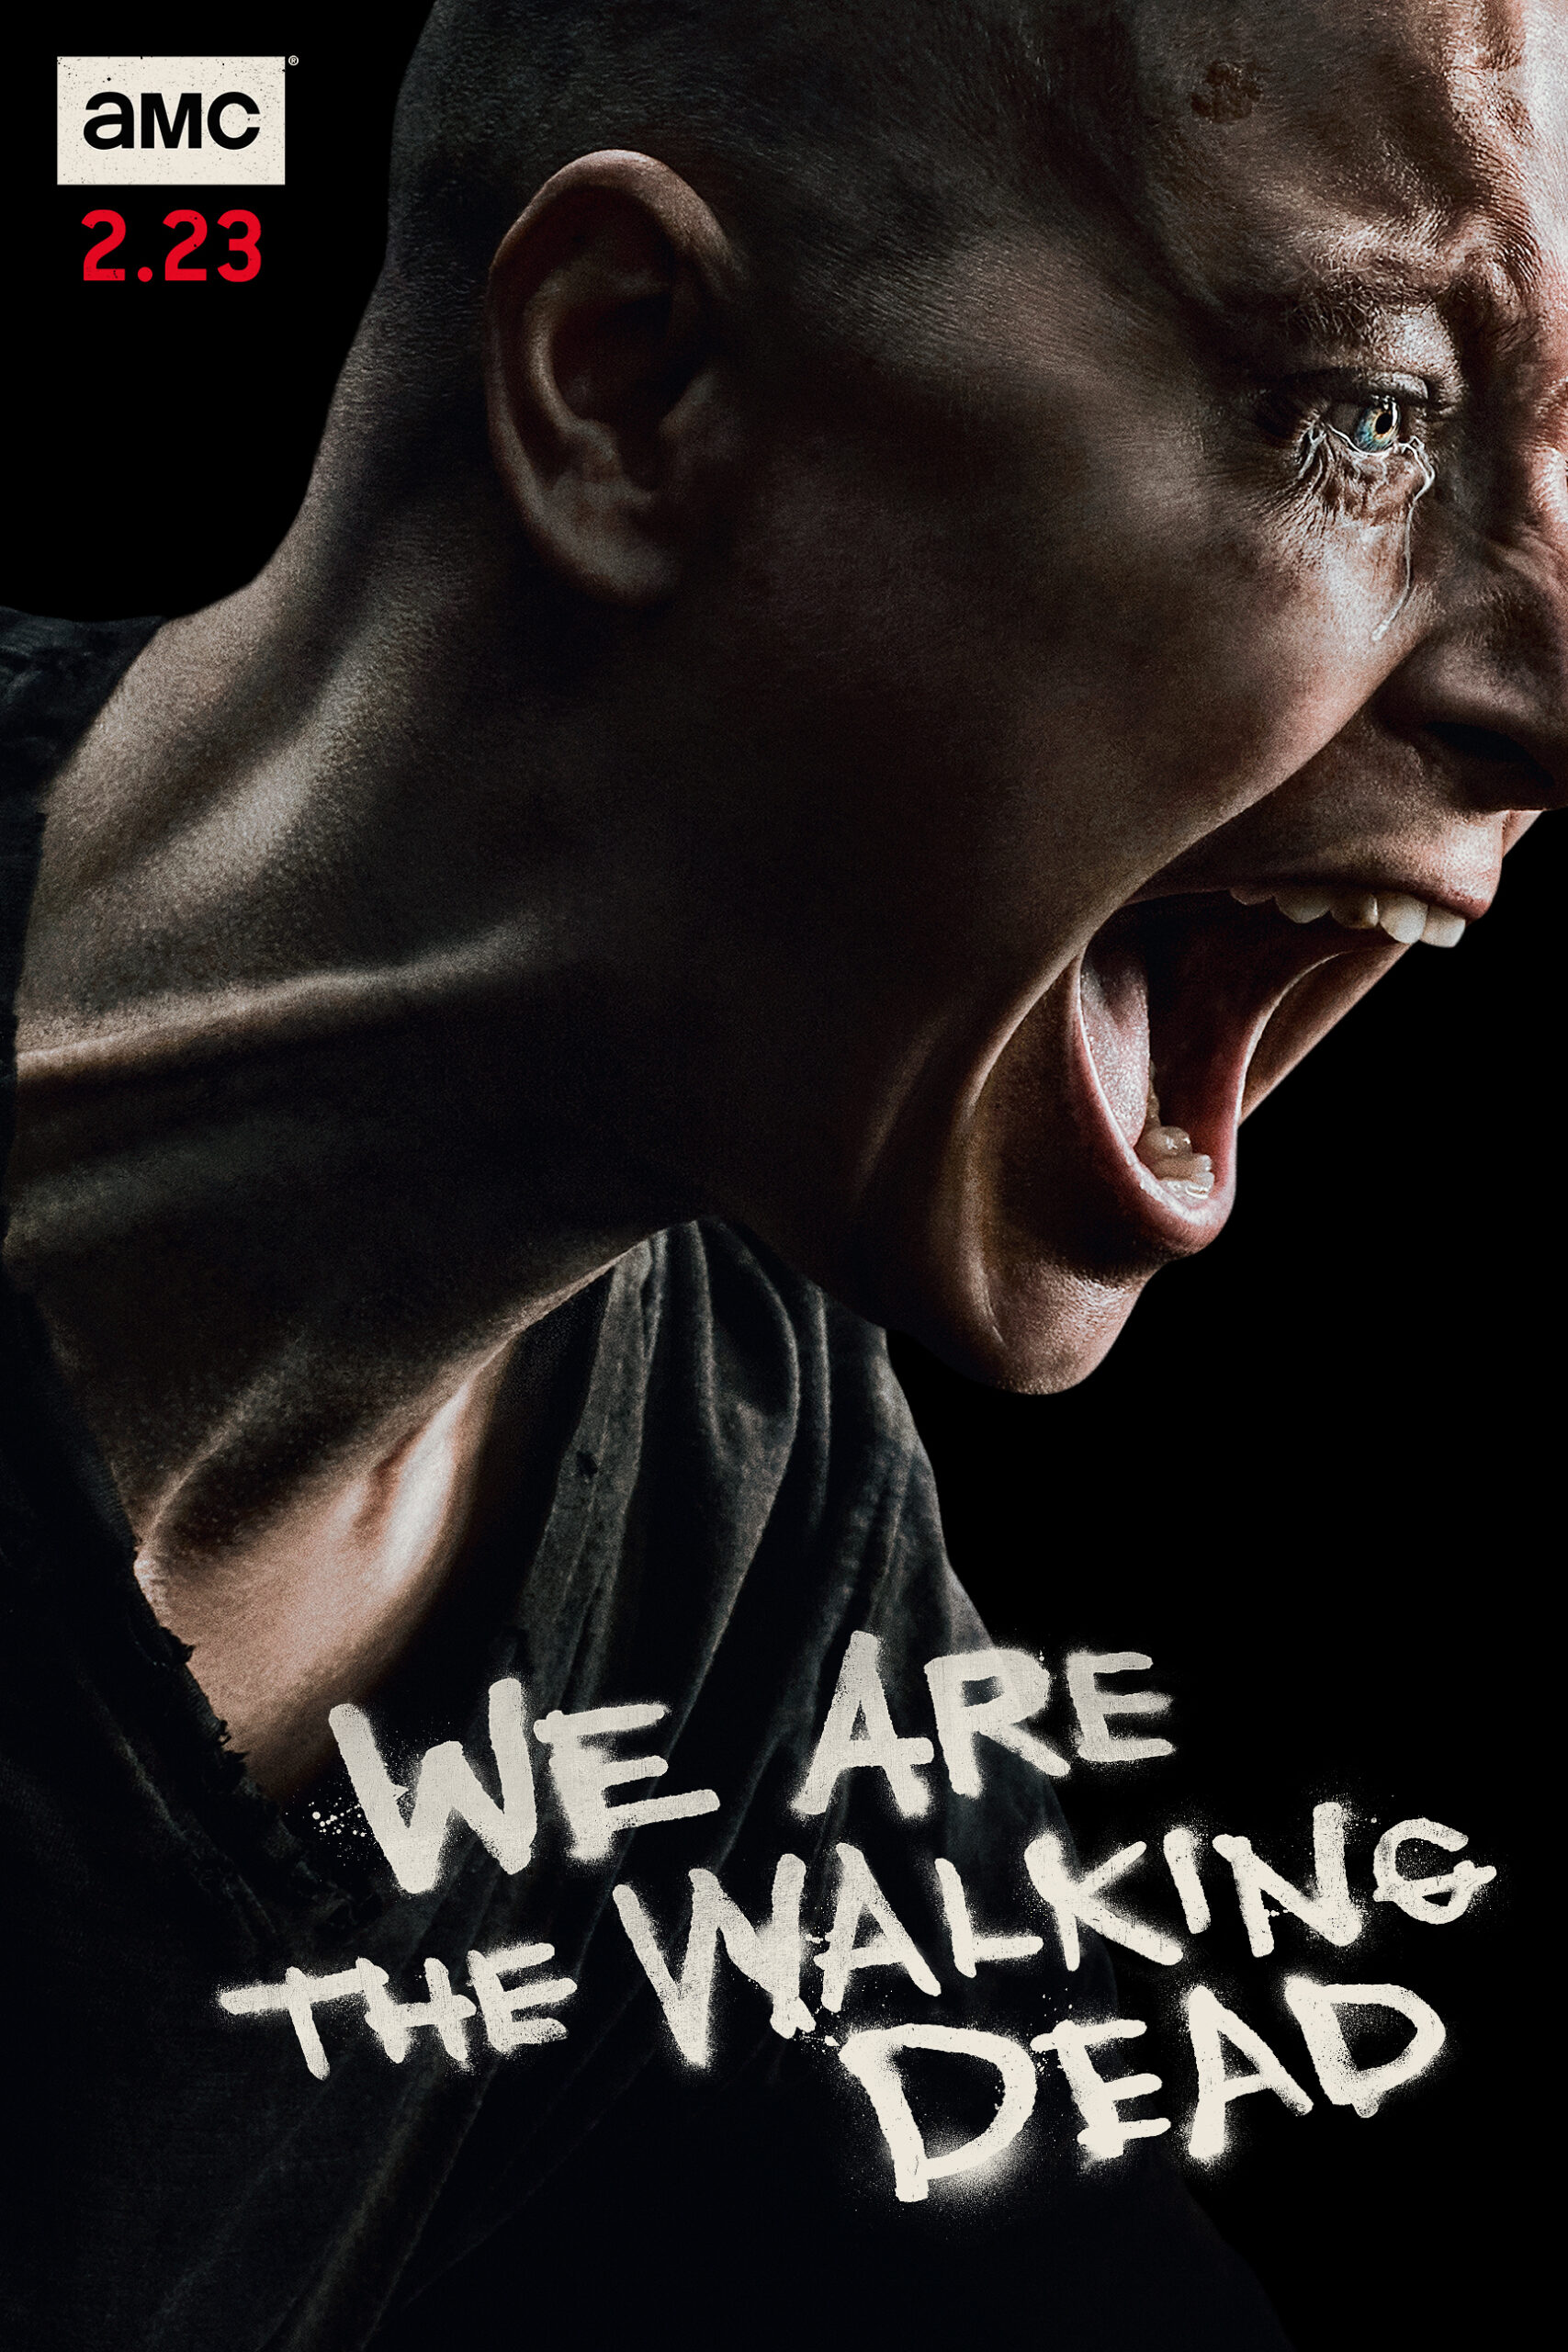 ดูหนังออนไลน์ฟรี The Walking Dead Season 4 EP2 เดอะวอล์กกิงเดด ปี4 ตอนที่2 [[Sub Thai]]